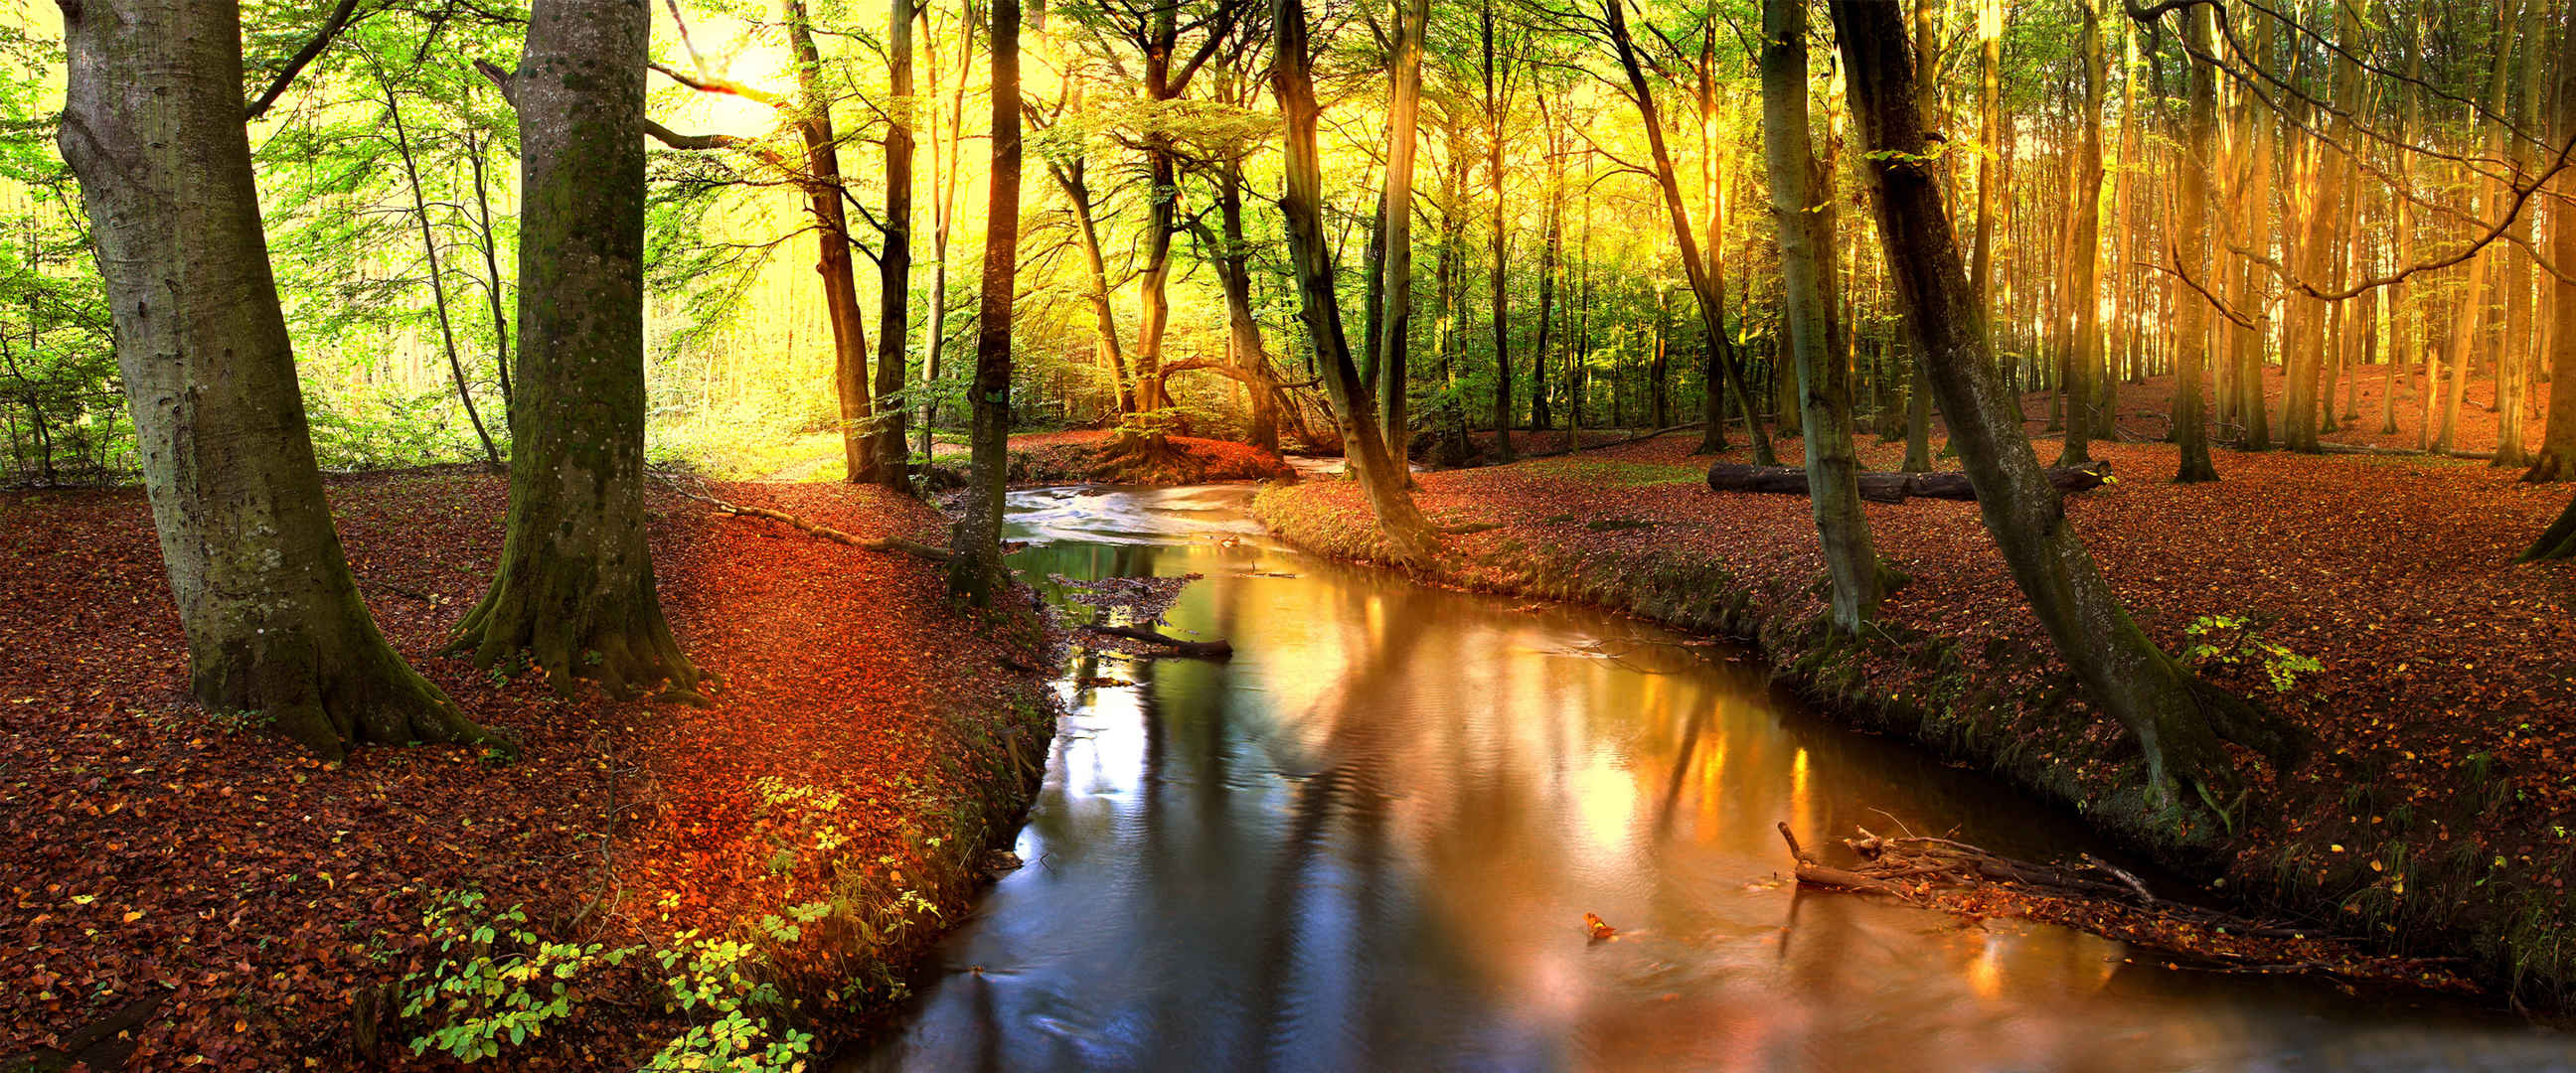 森林河流阳光图片自然风景-